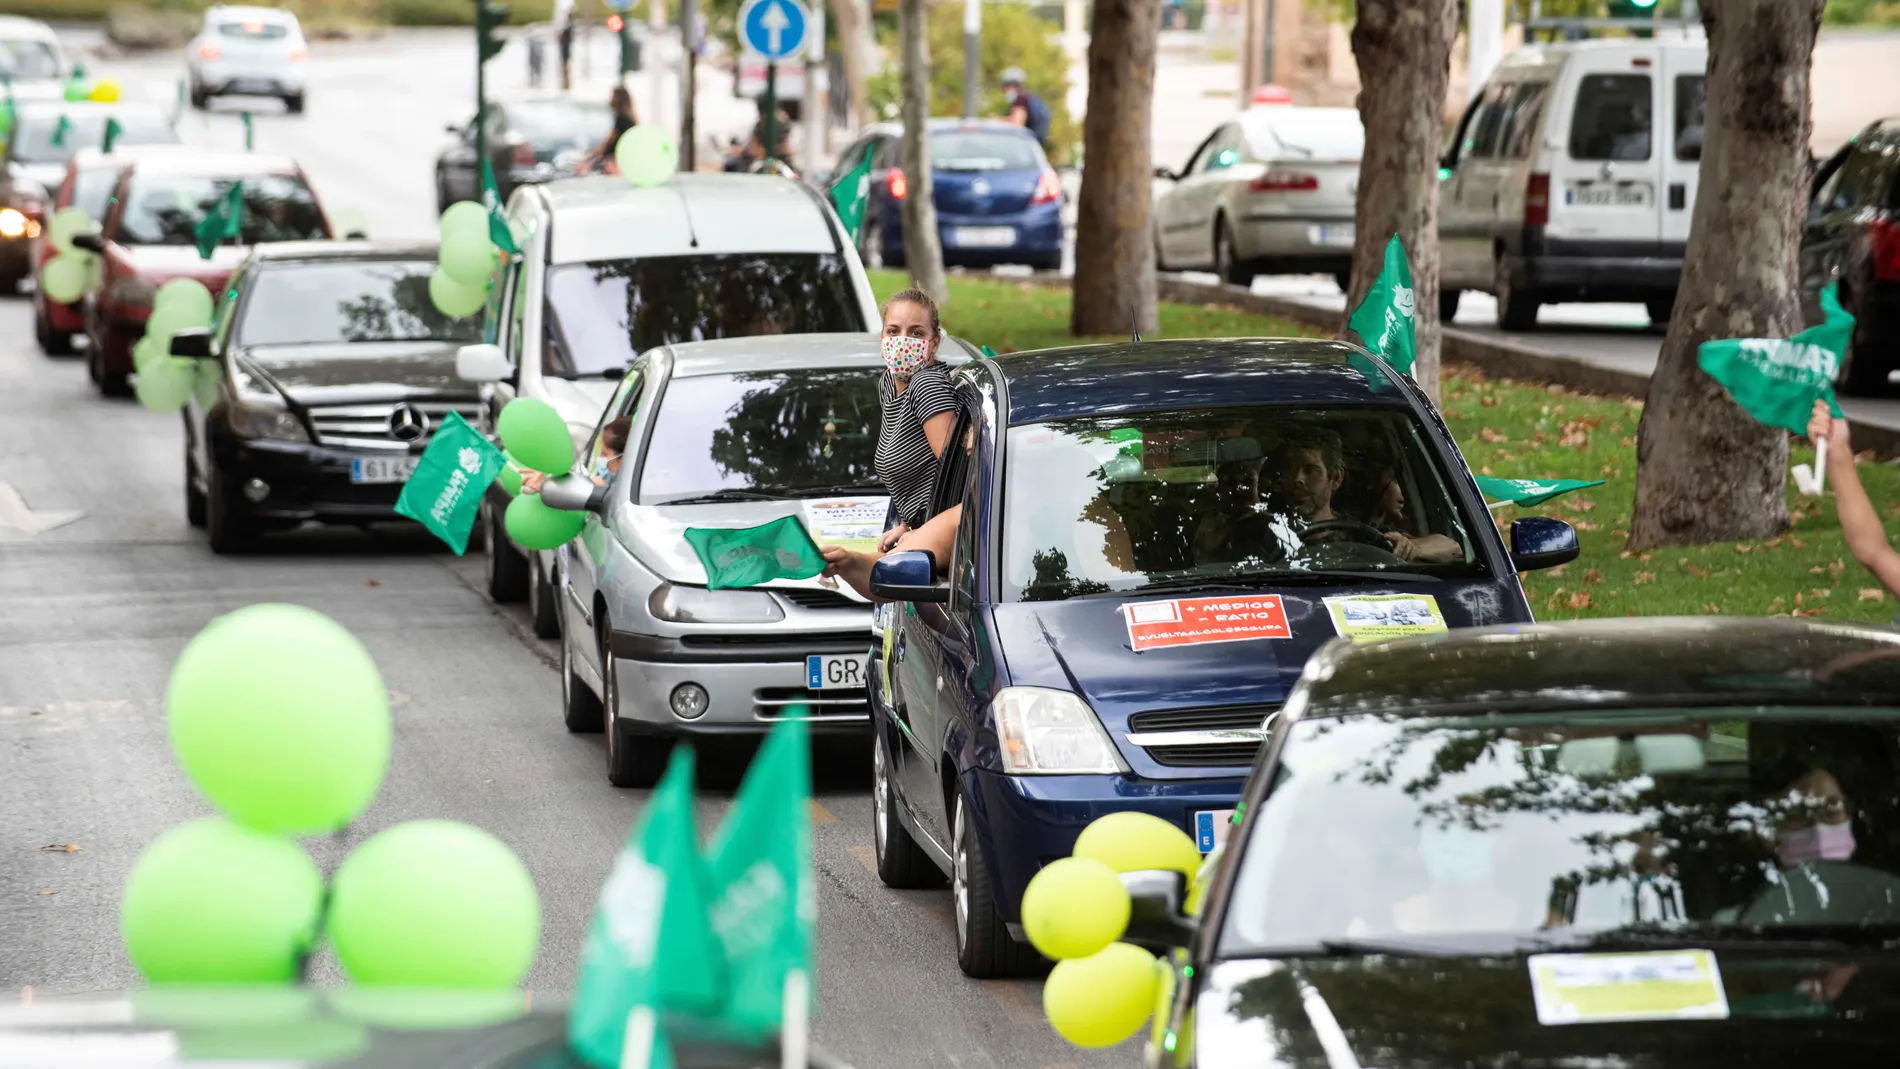 Caravana de coches en Granada para reivindicar una vuelta al cole "segura"